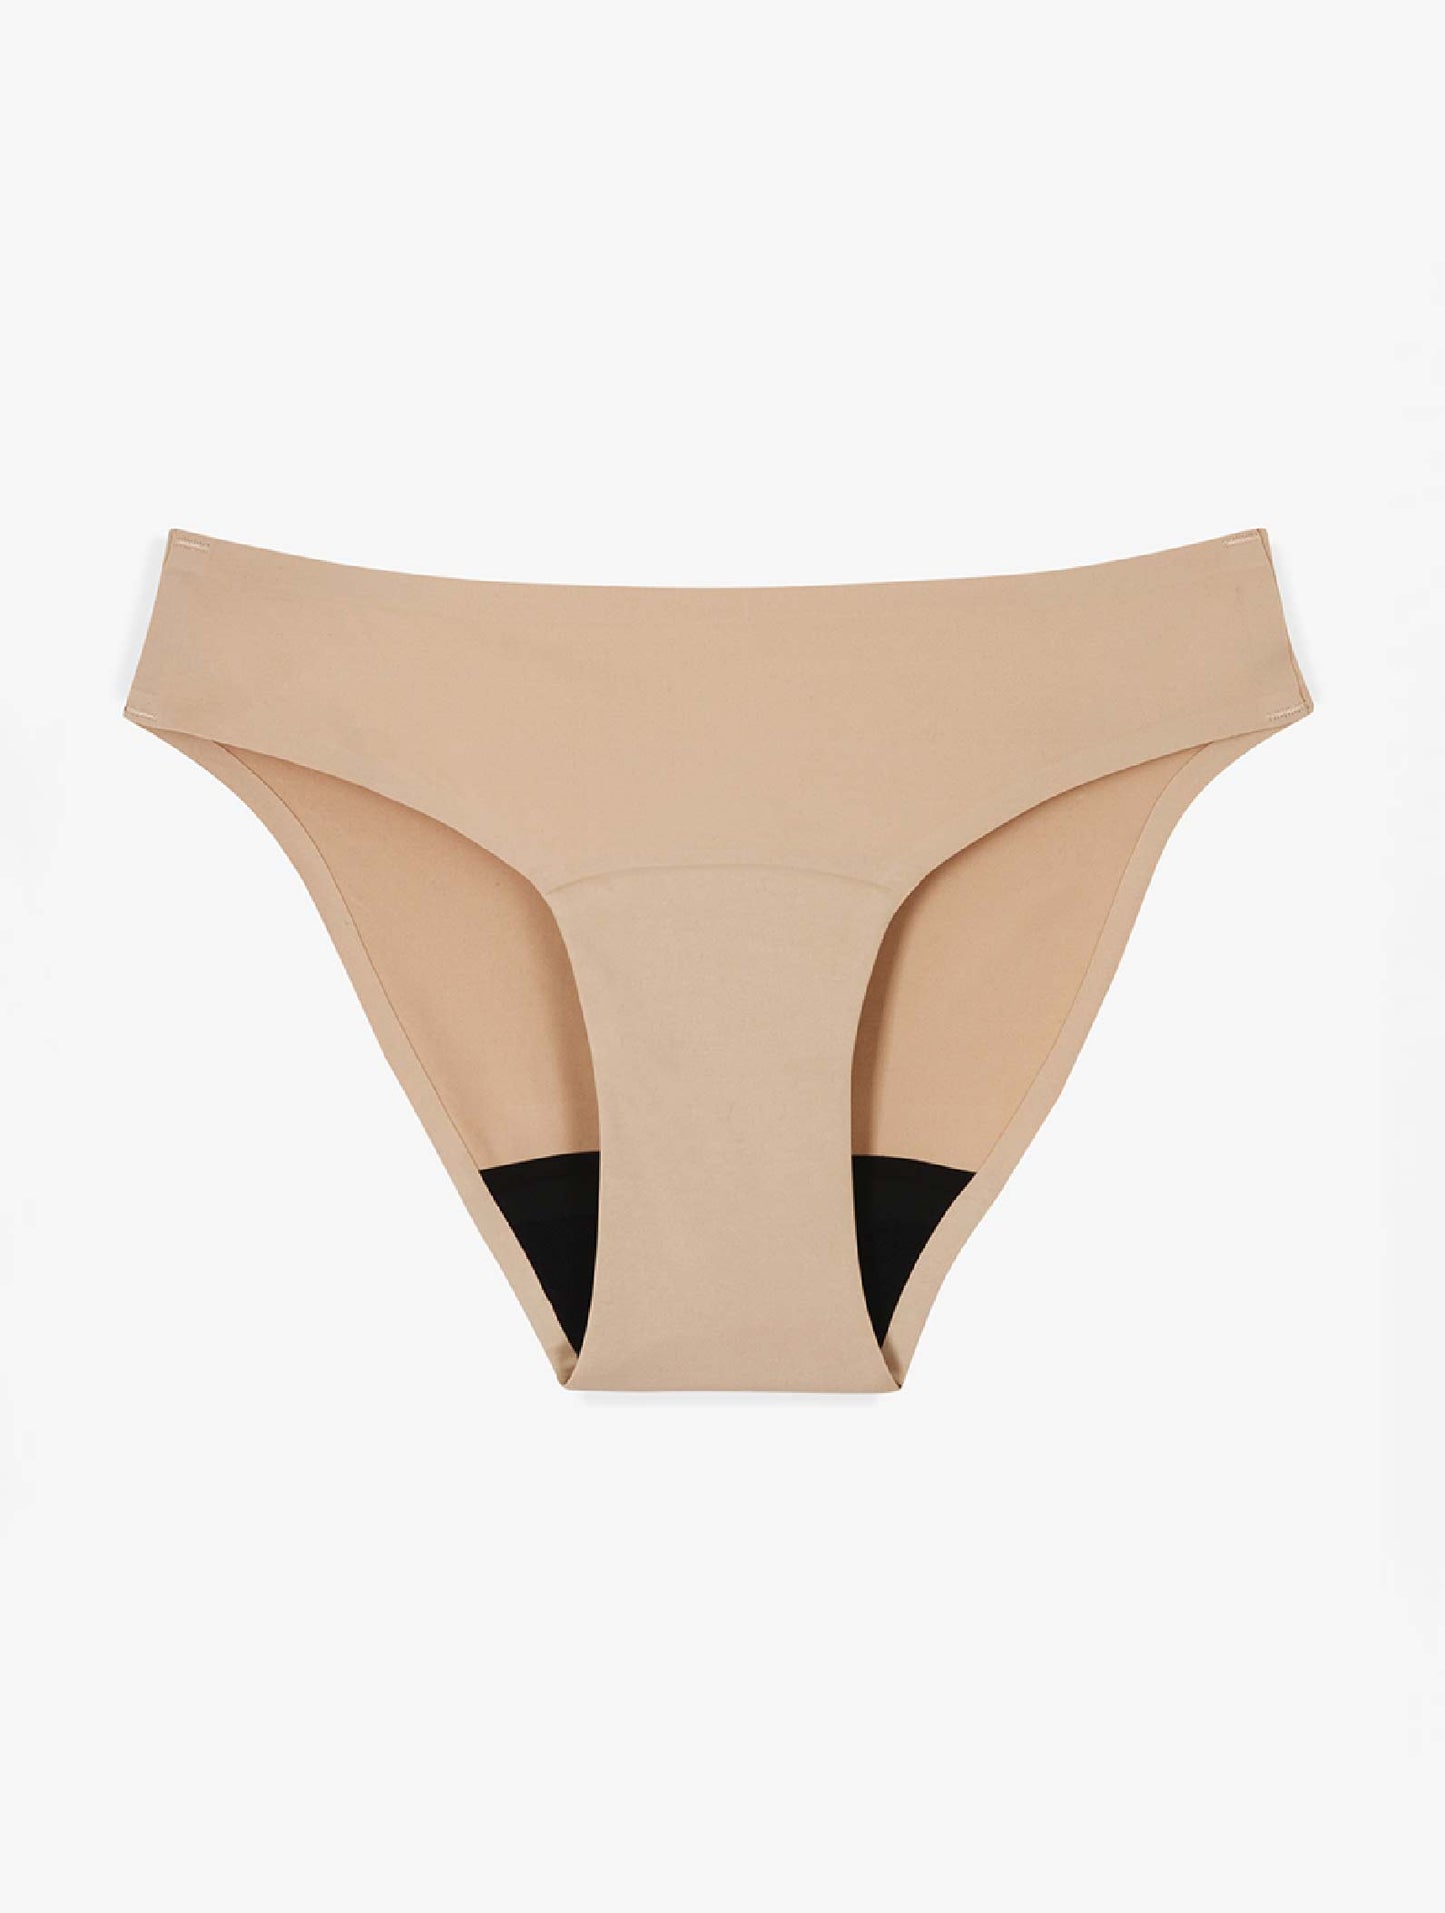 WOMEN'S GIRDLE SELENE 901 - underwear - WOMEN UNDERWEAR